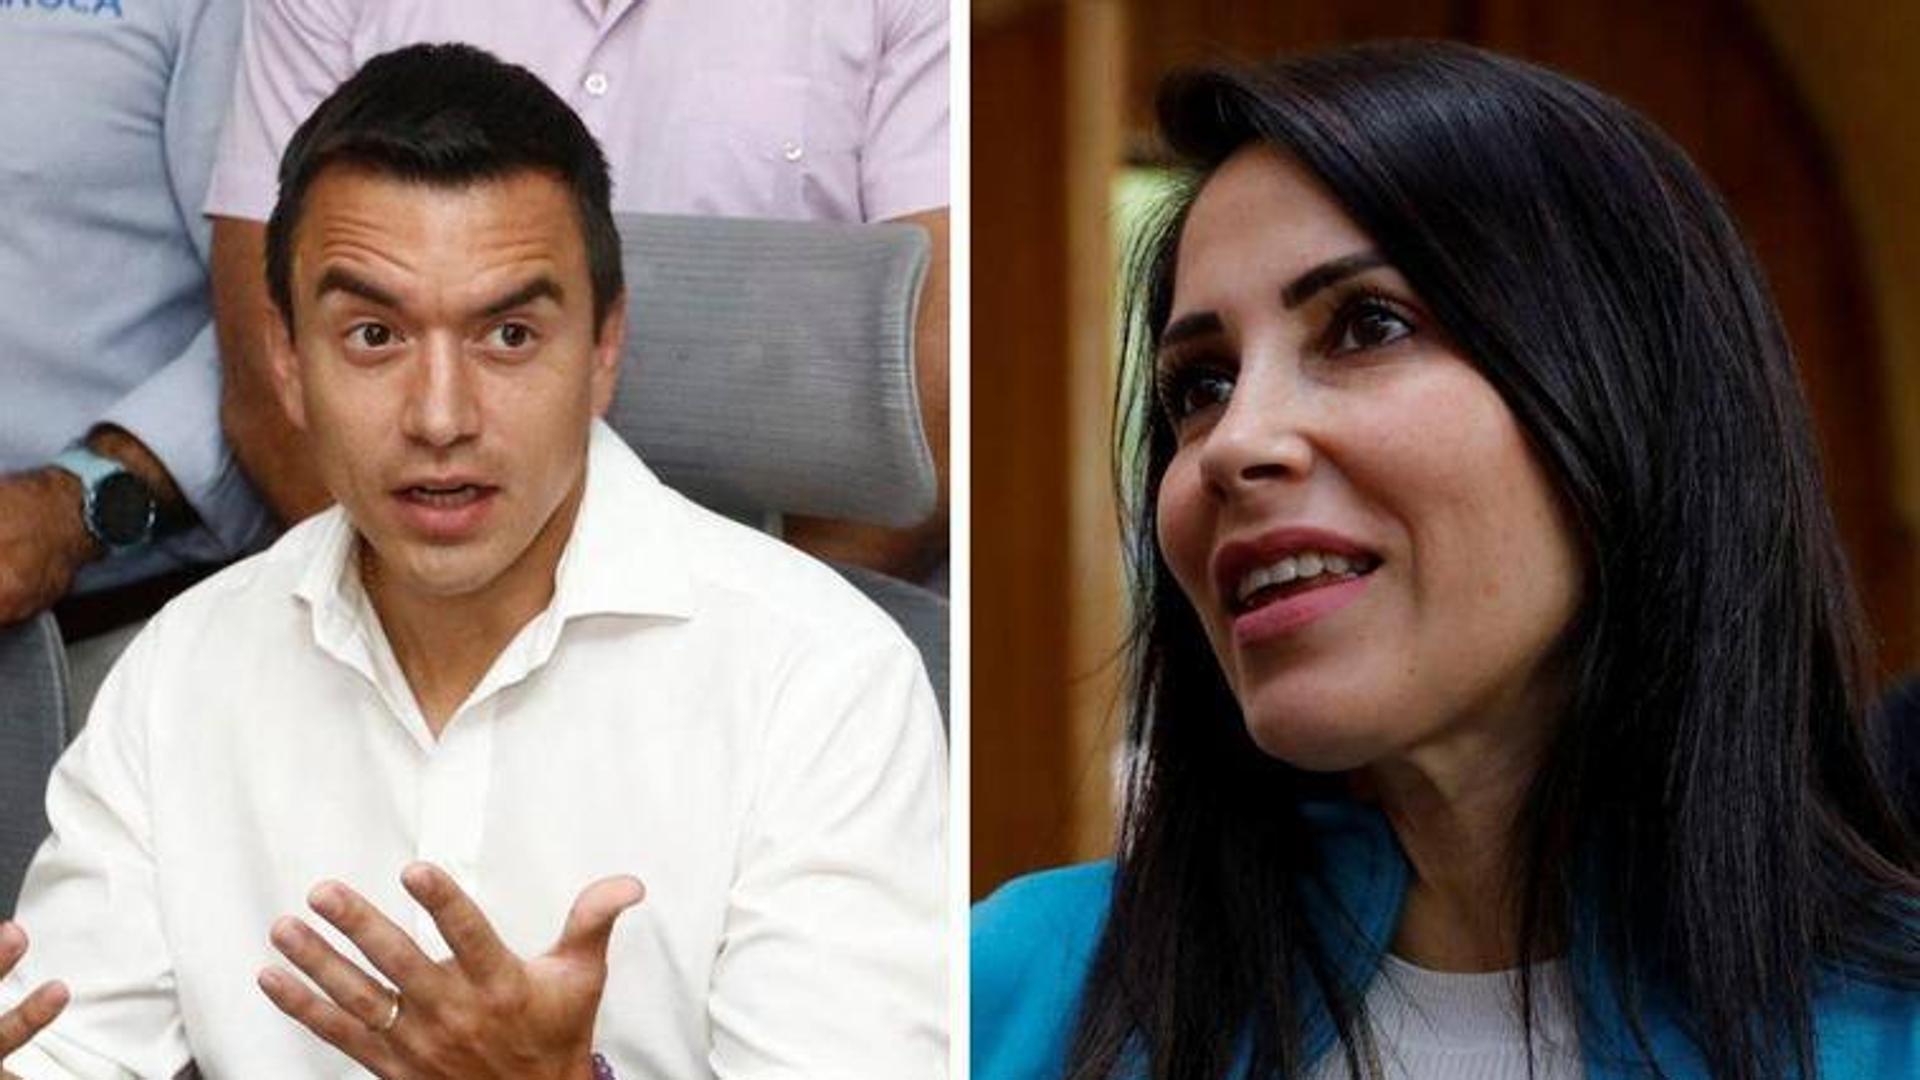 La correísta Luisa González y el empresario Daniel Noboa se jugarán la presidencia de Ecuador